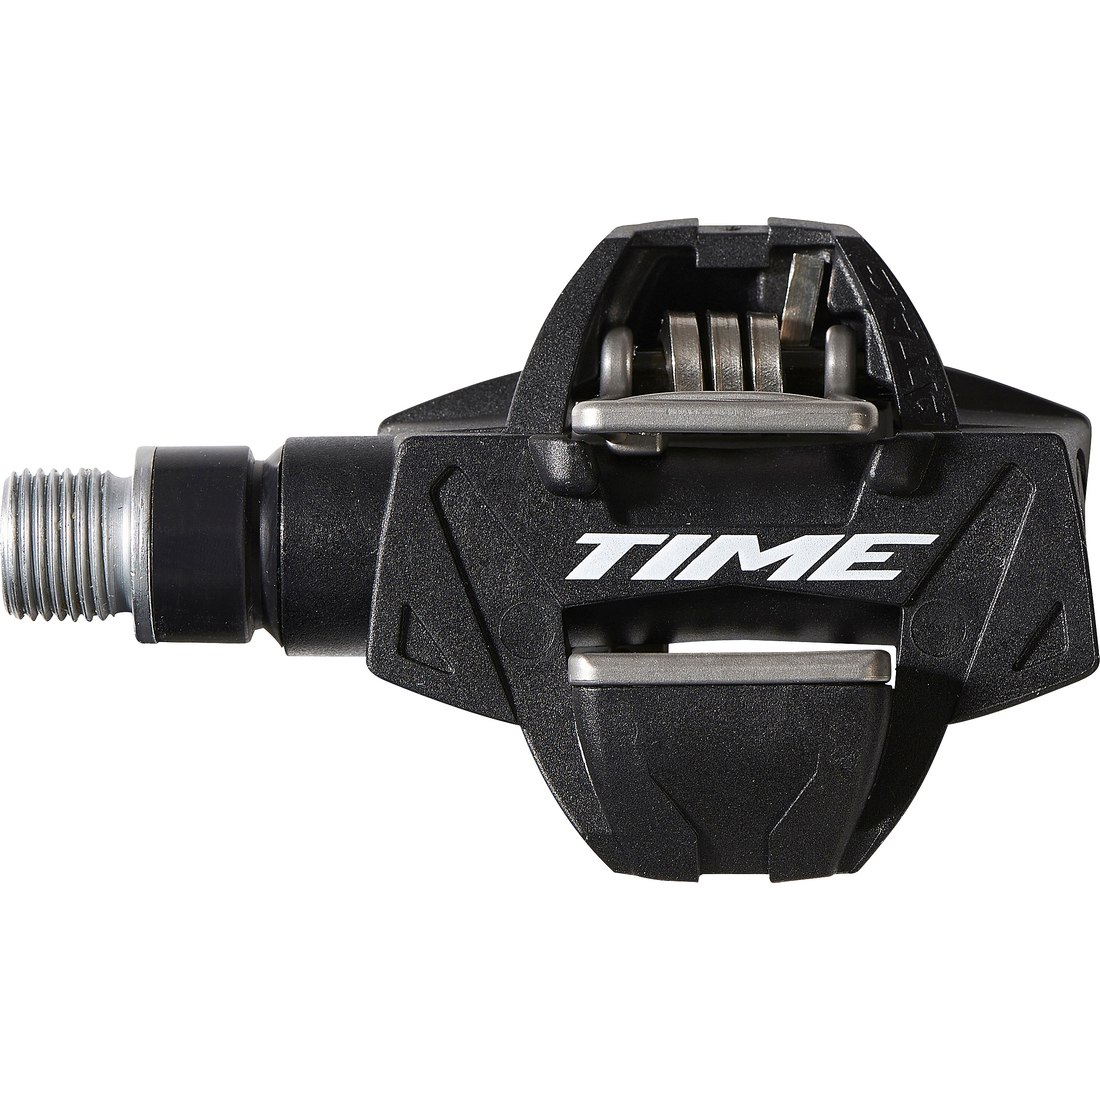 Productfoto van Time XC 4 ATAC MTB Pedals - black